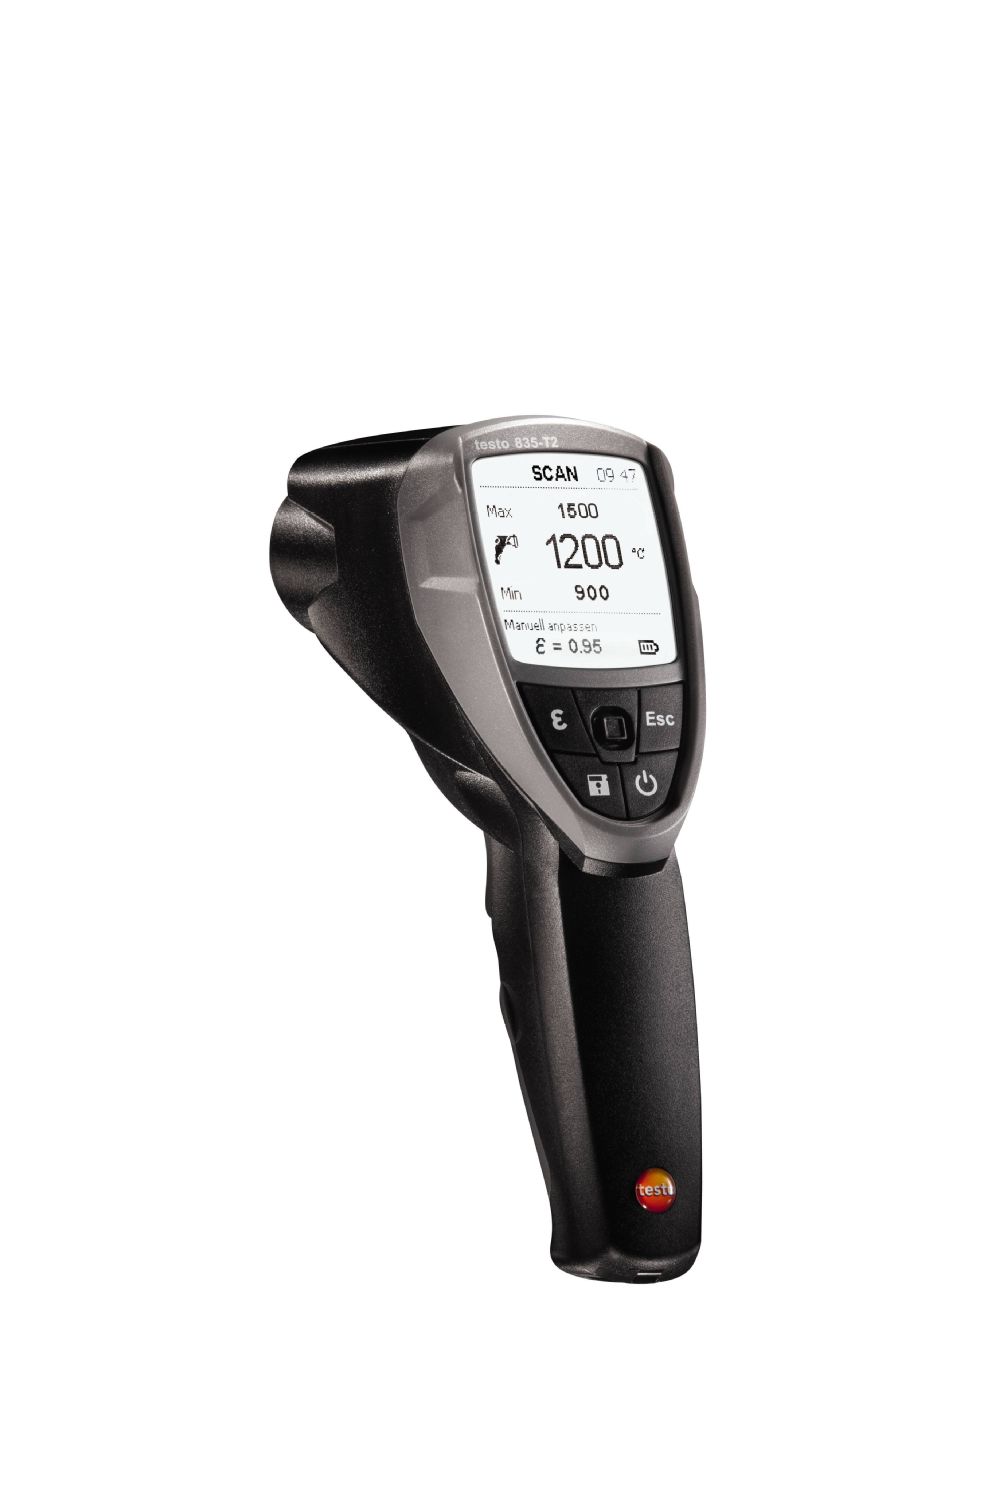 testo 835-T2 — высокотемпературный инфракрасный термометр